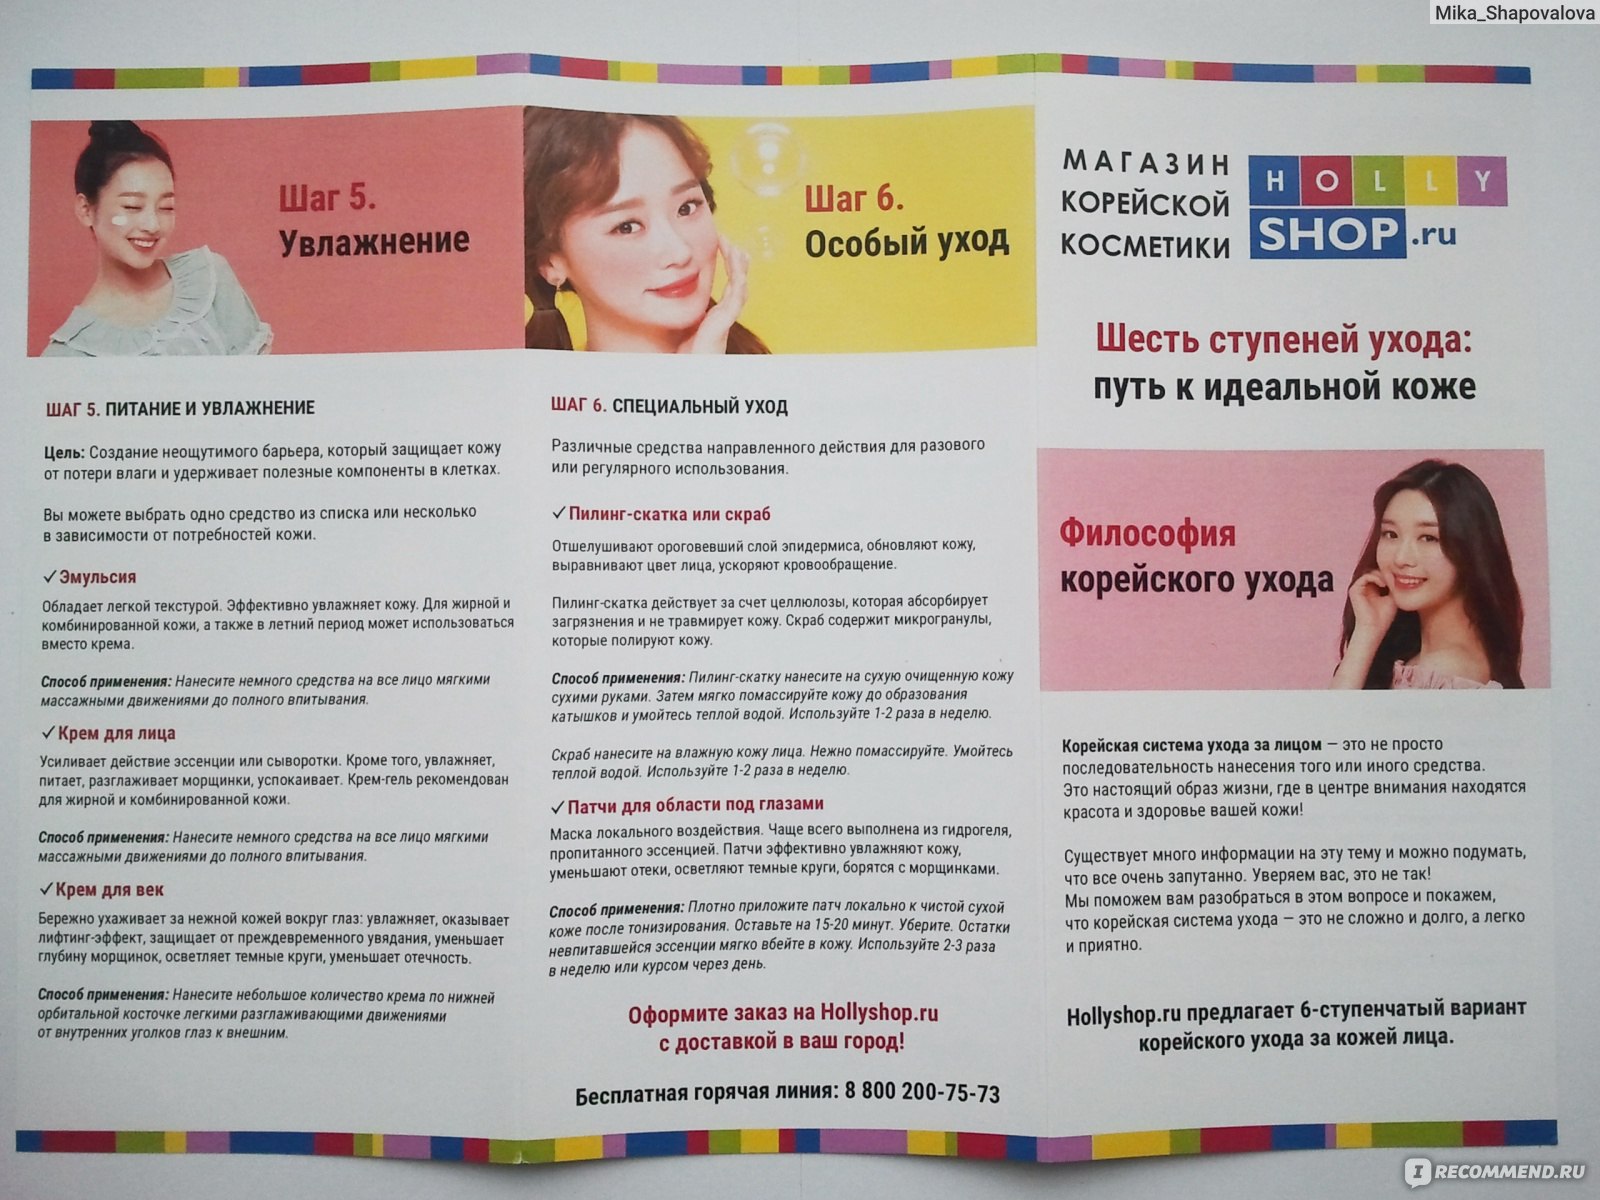 Hollyshop Ru Интернет Магазин Корейской